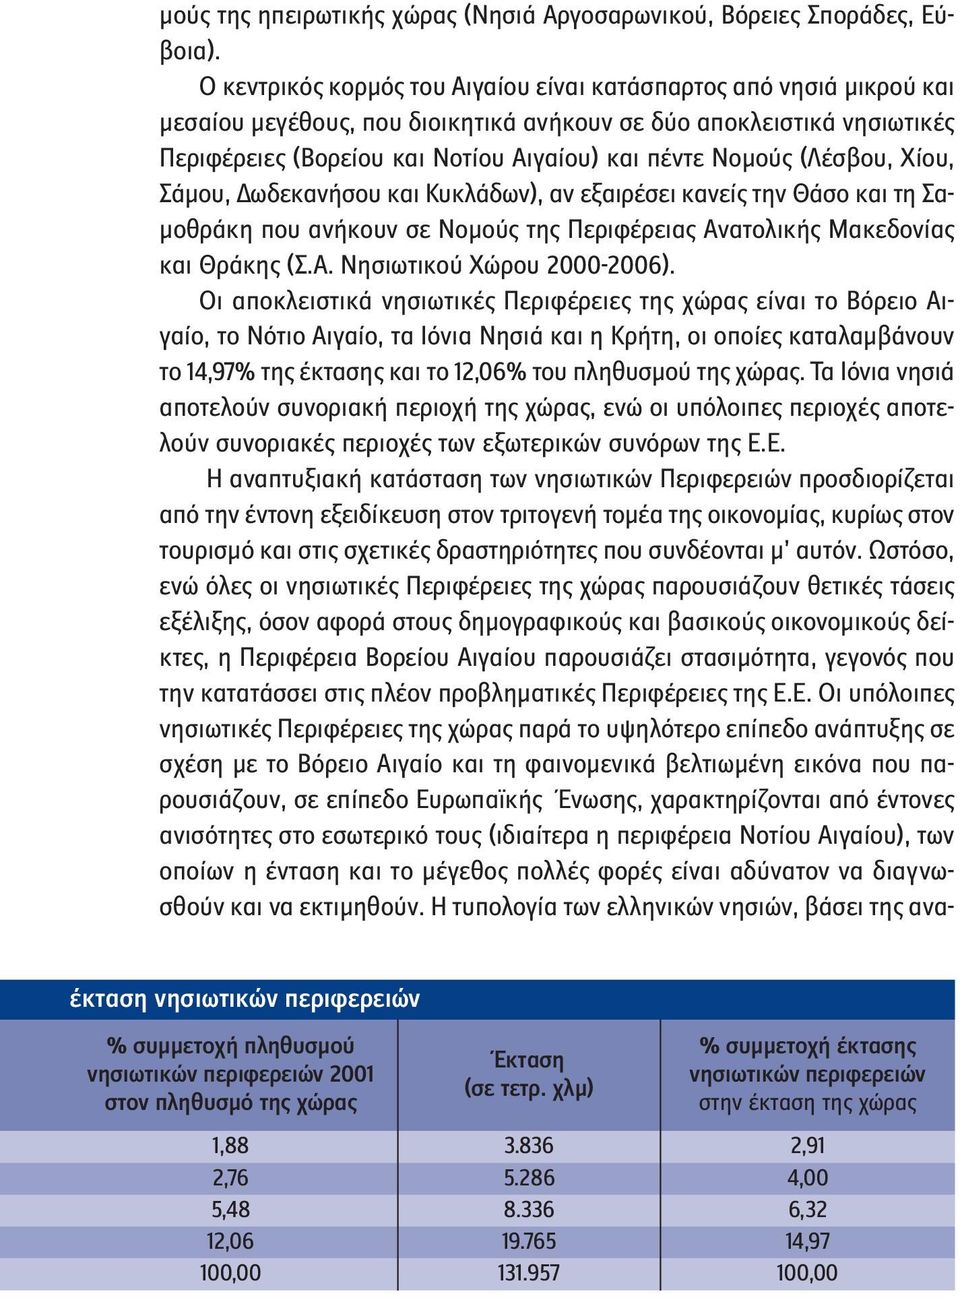 (Λέσβου, Χίου, Σάμου, Δωδεκανήσου και Κυκλάδων), αν εξαιρέσει κανείς την Θάσο και τη Σαμοθράκη που ανήκουν σε Νομούς της Περιφέρειας Ανατολικής Μακεδονίας και Θράκης (Σ.Α. Νησιωτικού Χώρου 2000-2006).